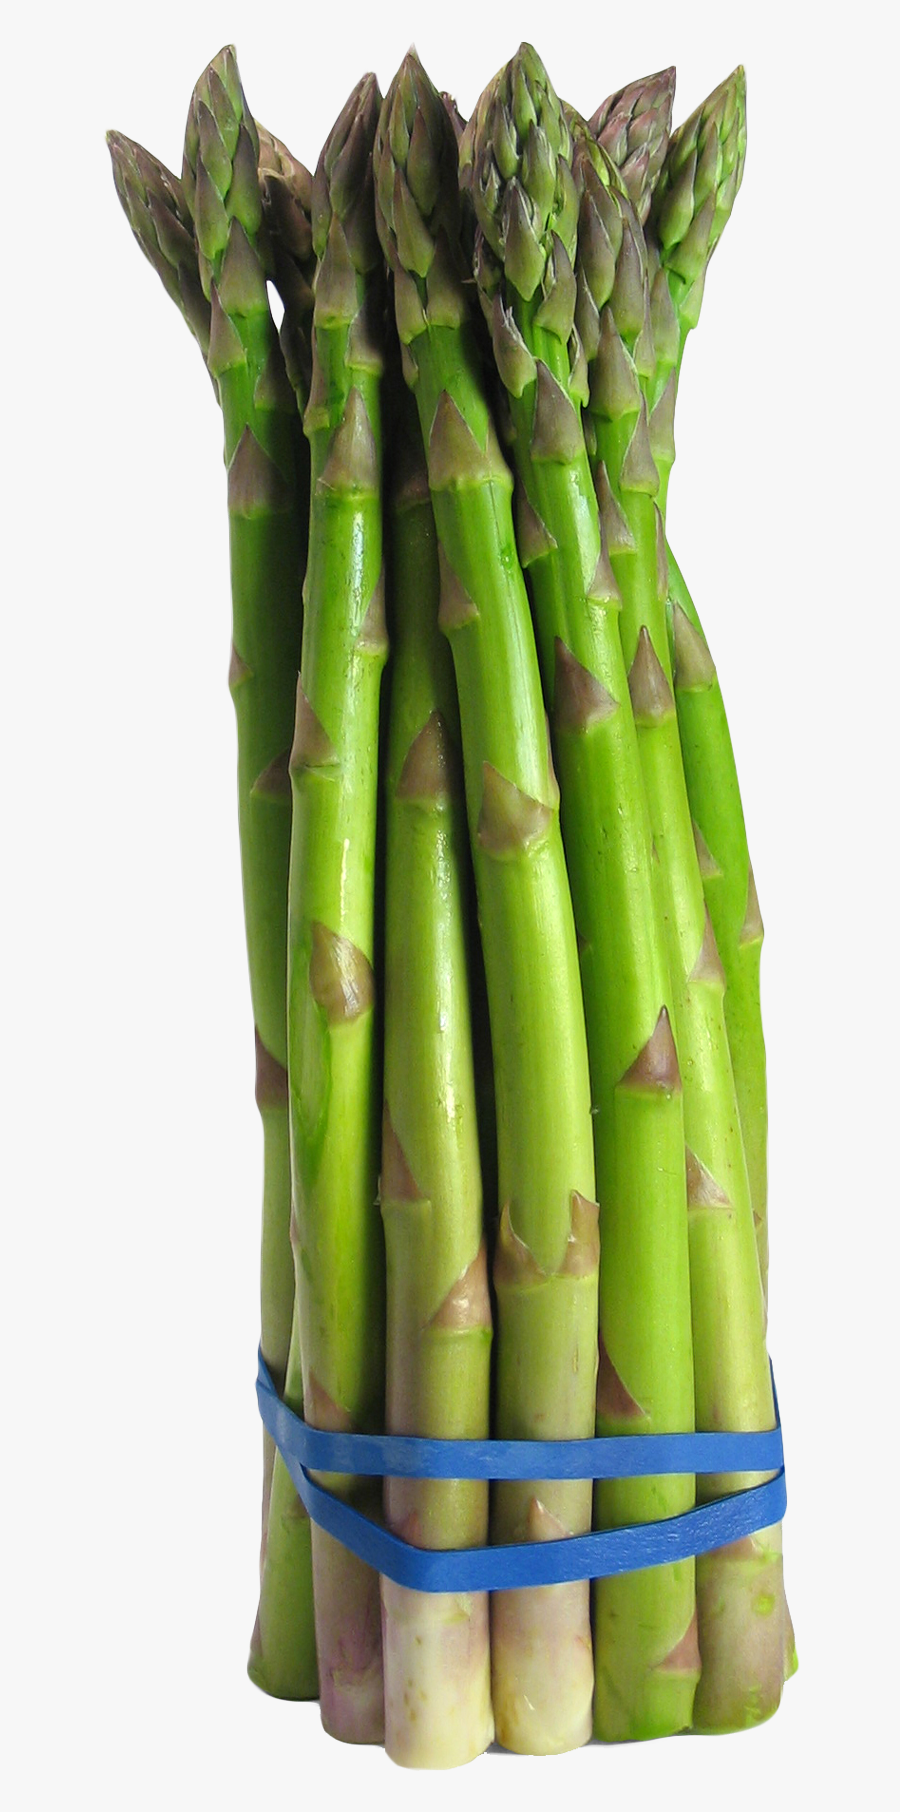 Asparagus Png Image, Transparent Clipart